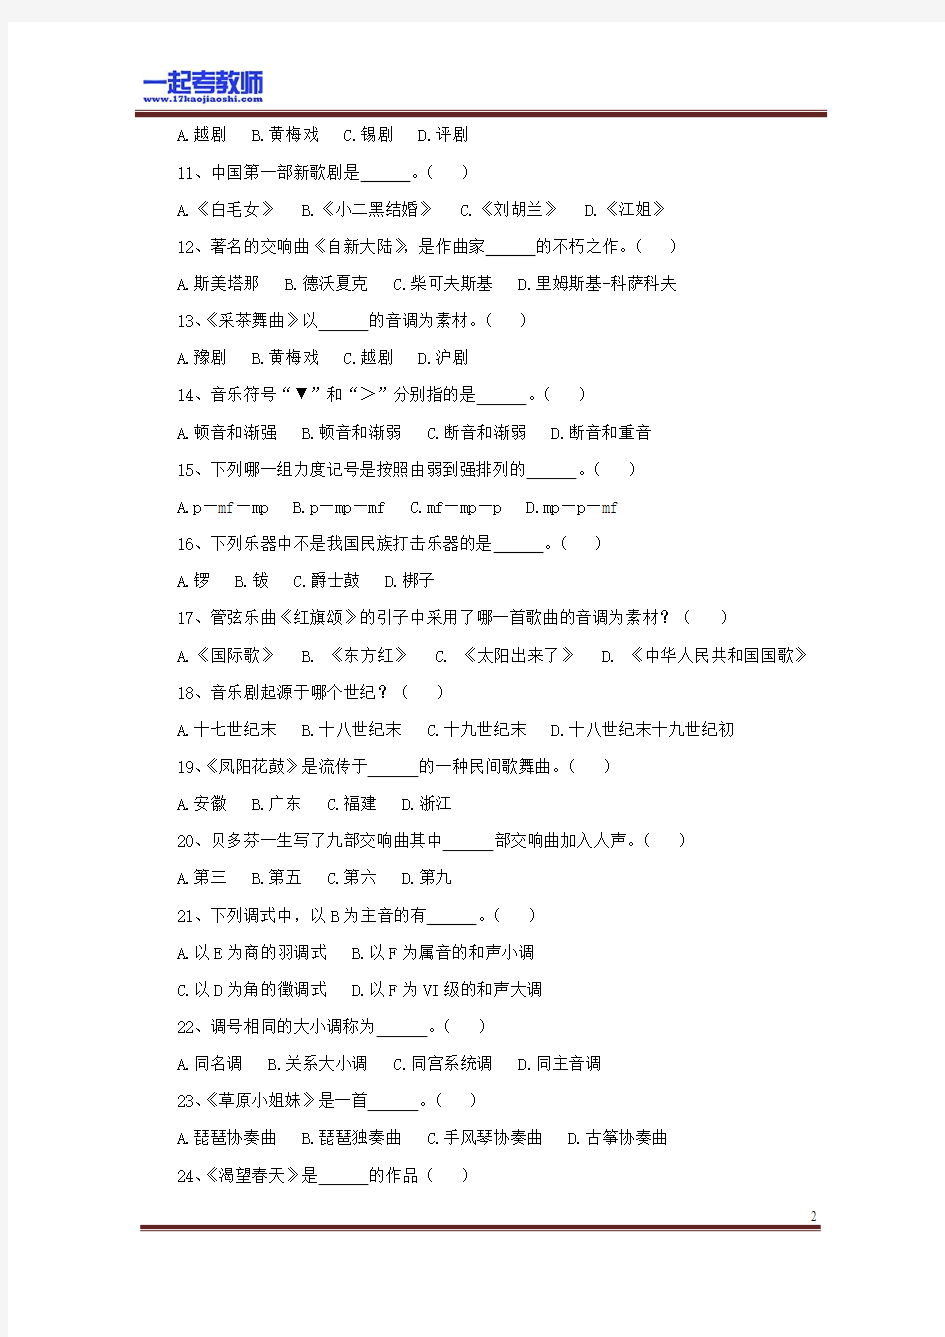 2013 江苏 扬州 教师招聘考试笔试 音乐 真题答案解析